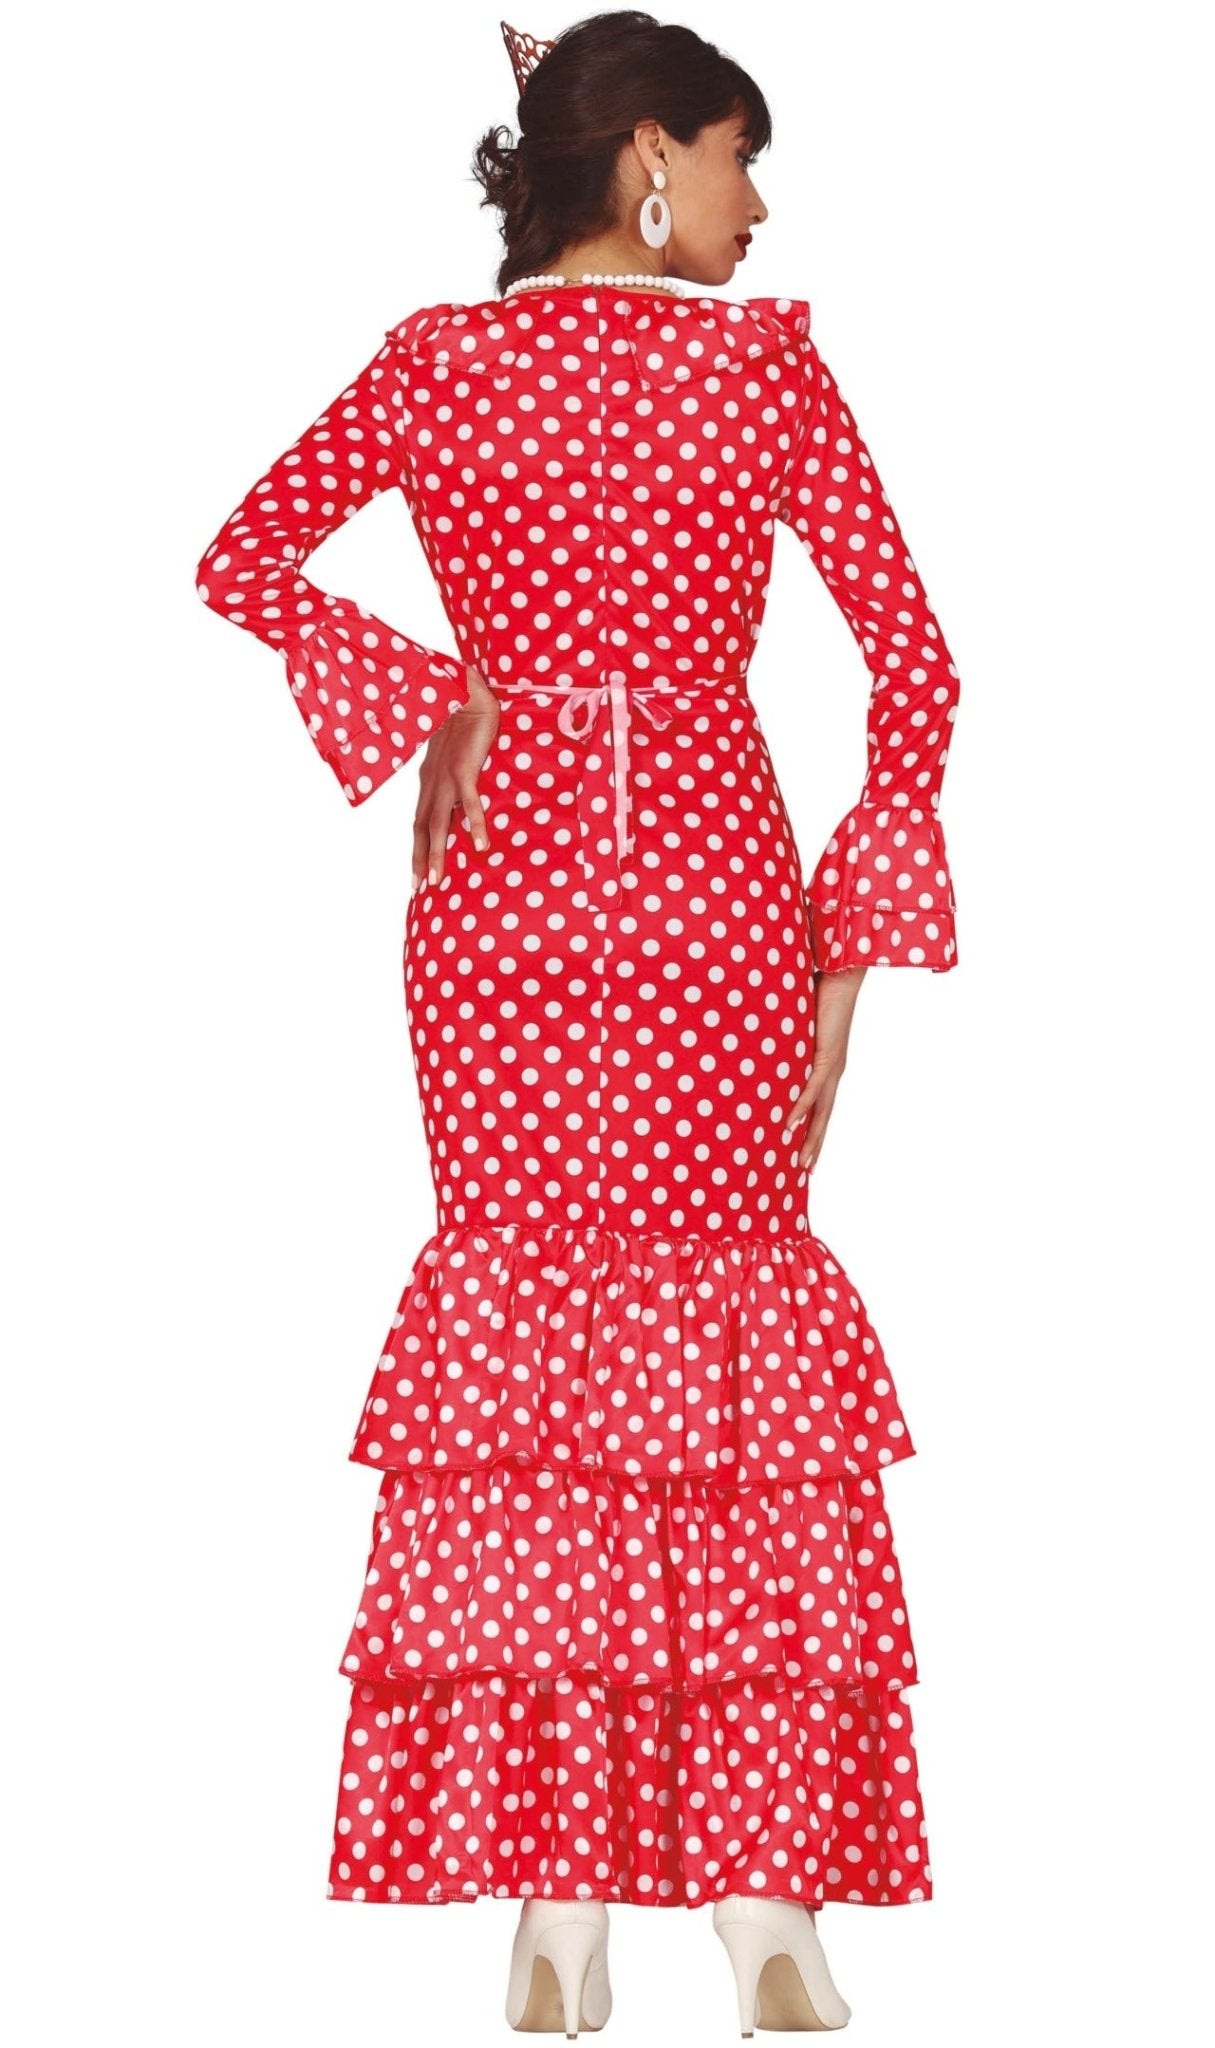 Disfraz de Flamenca Rojo mujer, Tienda de Disfraces Online